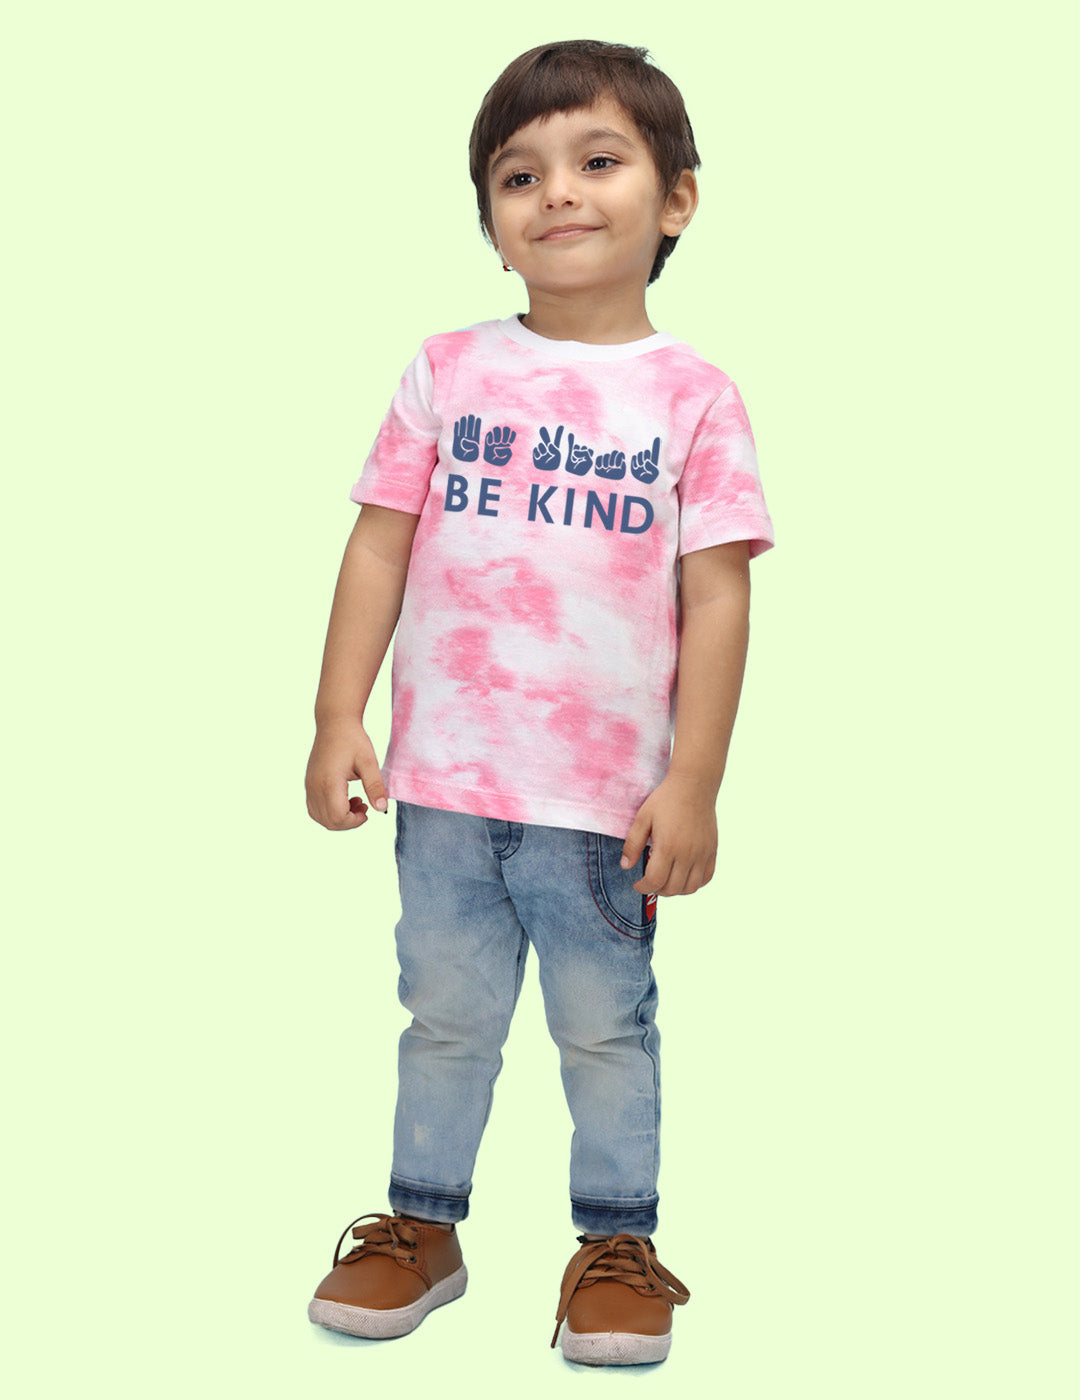 Nusyl infants pink be kind printed Tie & Dye tshirt.